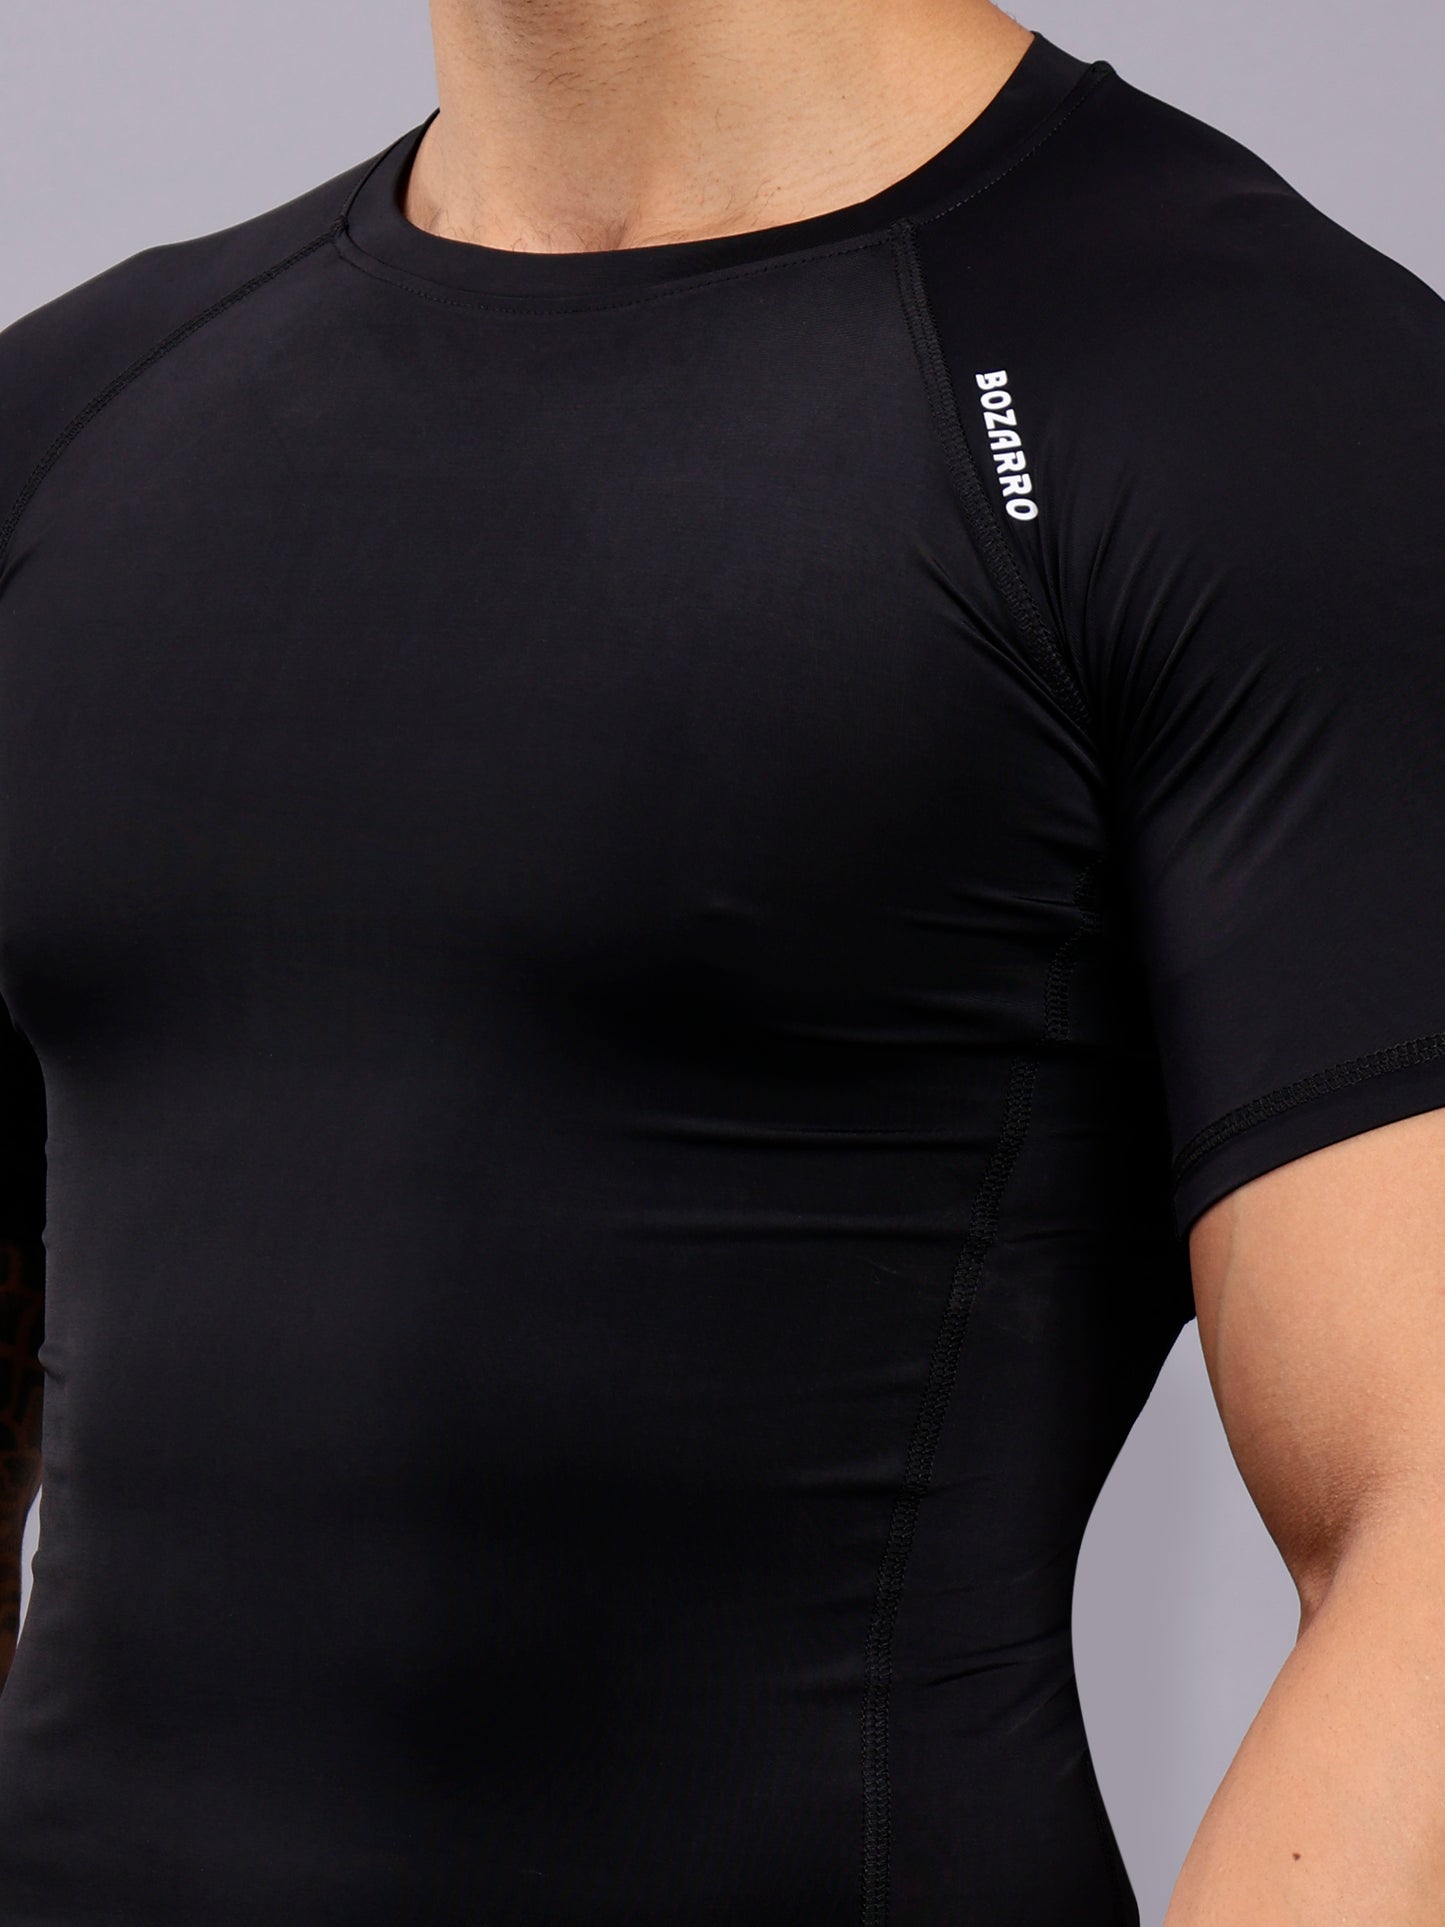 Round neck Compression half sleeve tshirt-Black